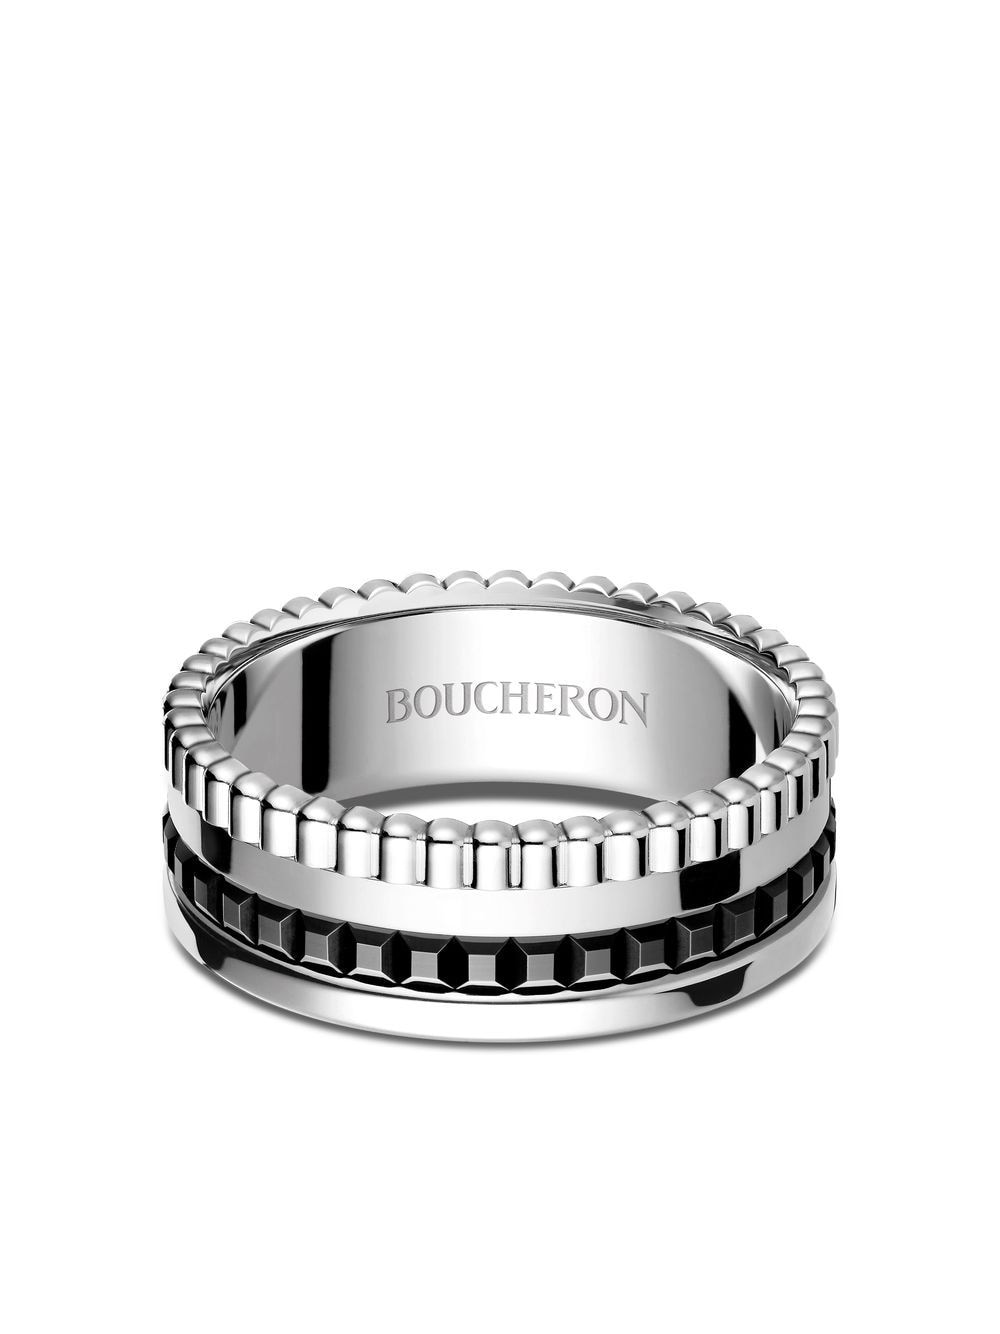 Boucheron Quatre kleine ring met zwart detail - Zilver